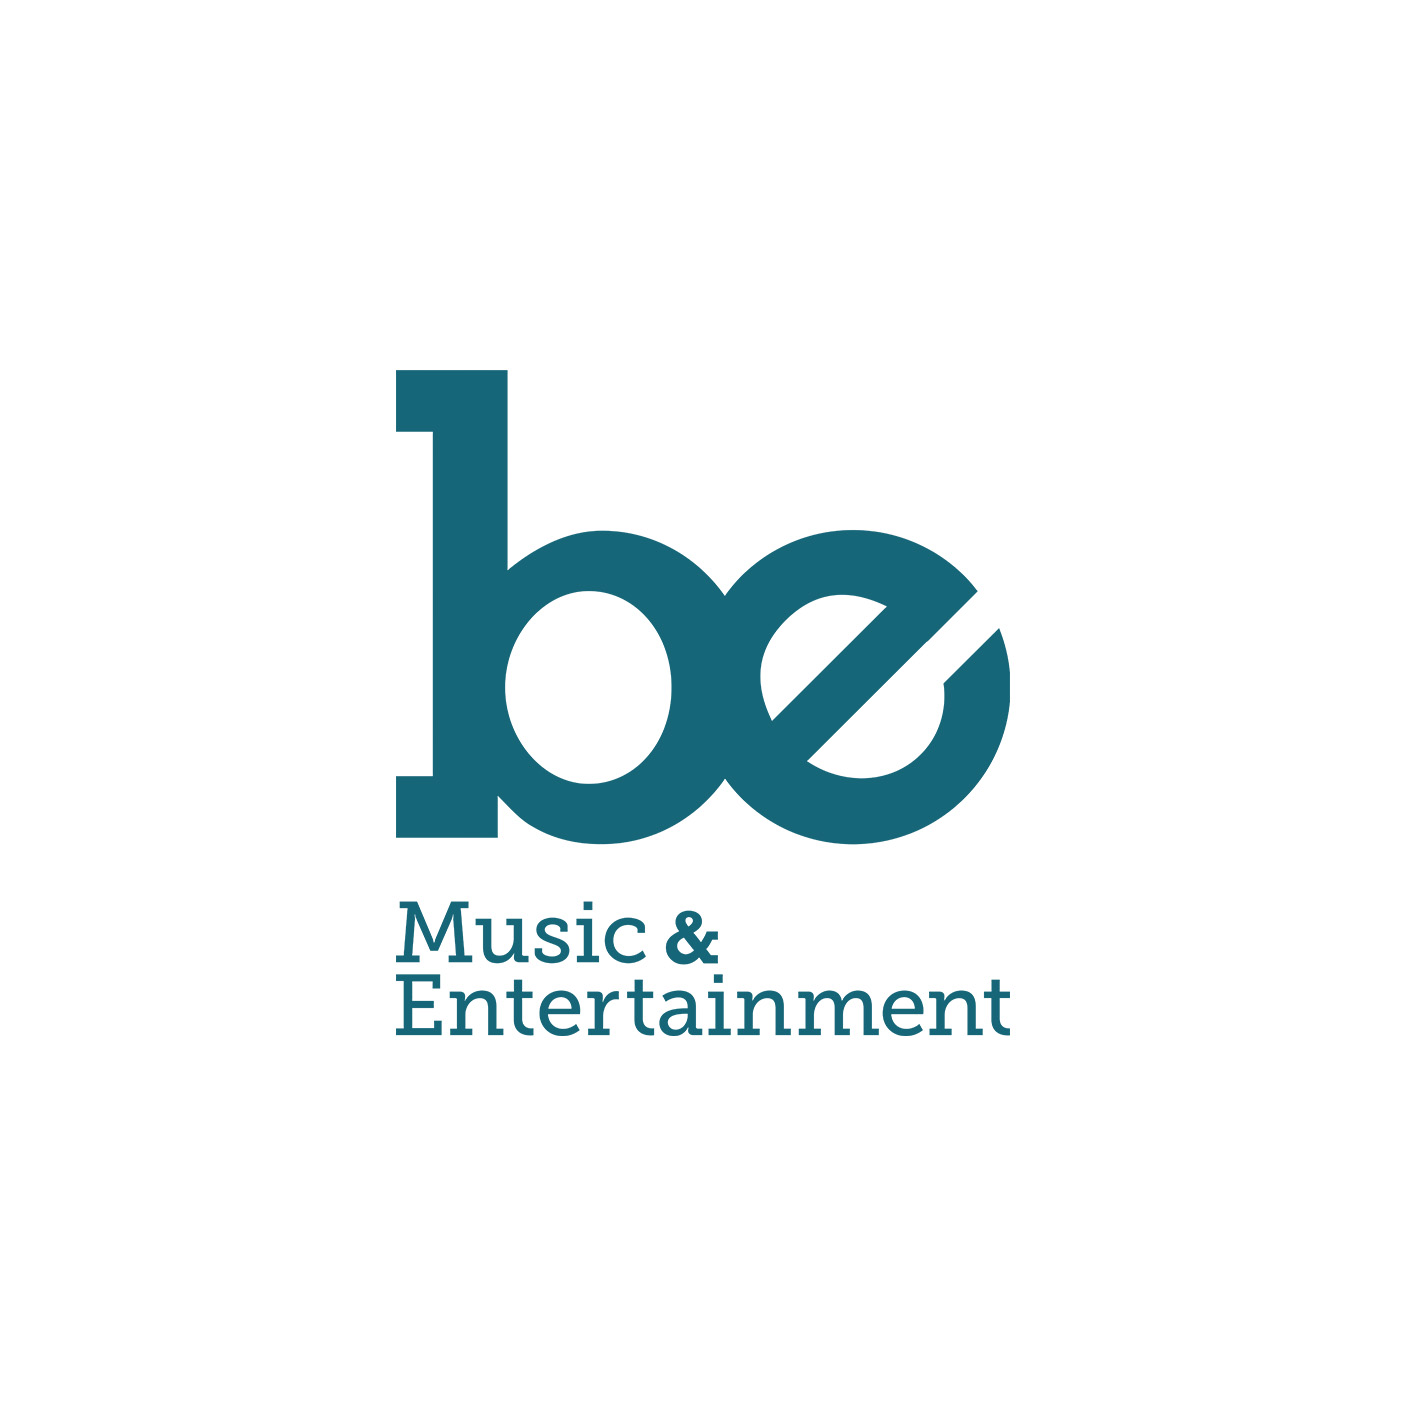 'Be' logo branding for Be Music & Entertainment.